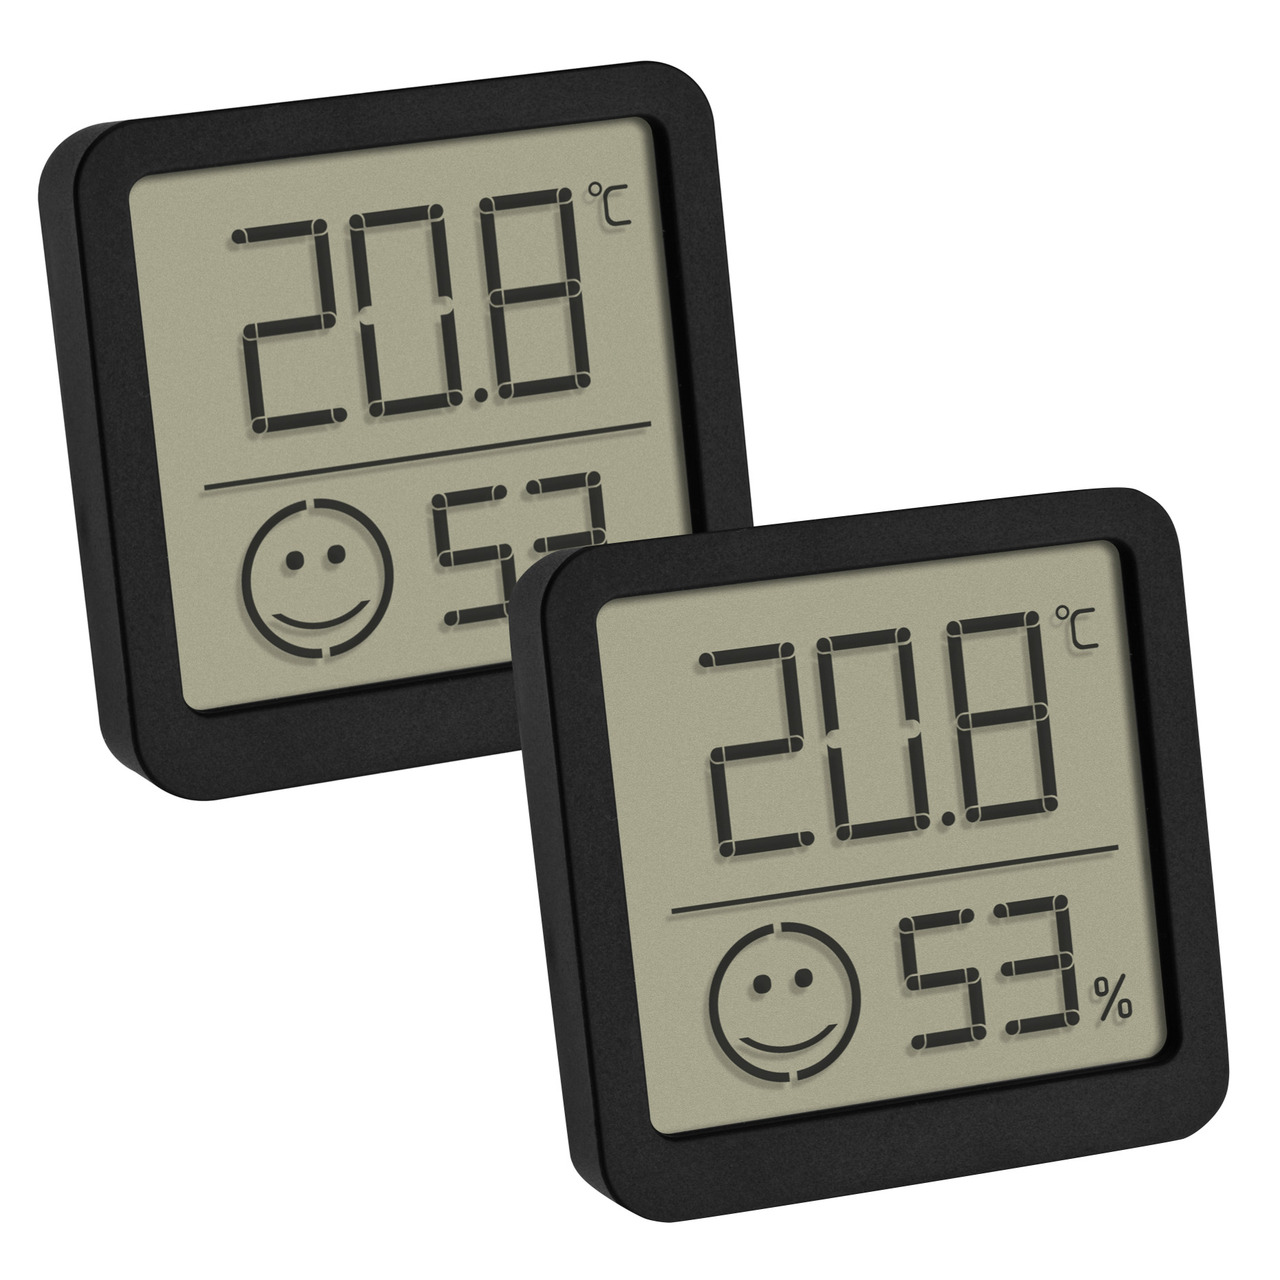 TFA 2er-Set Thermo-Hygrometer mit Smiley-Klimakomfortanzeige- Raumtemperatur- Luftfeuchte- schwarz unter Klima - Wetter - Umwelt